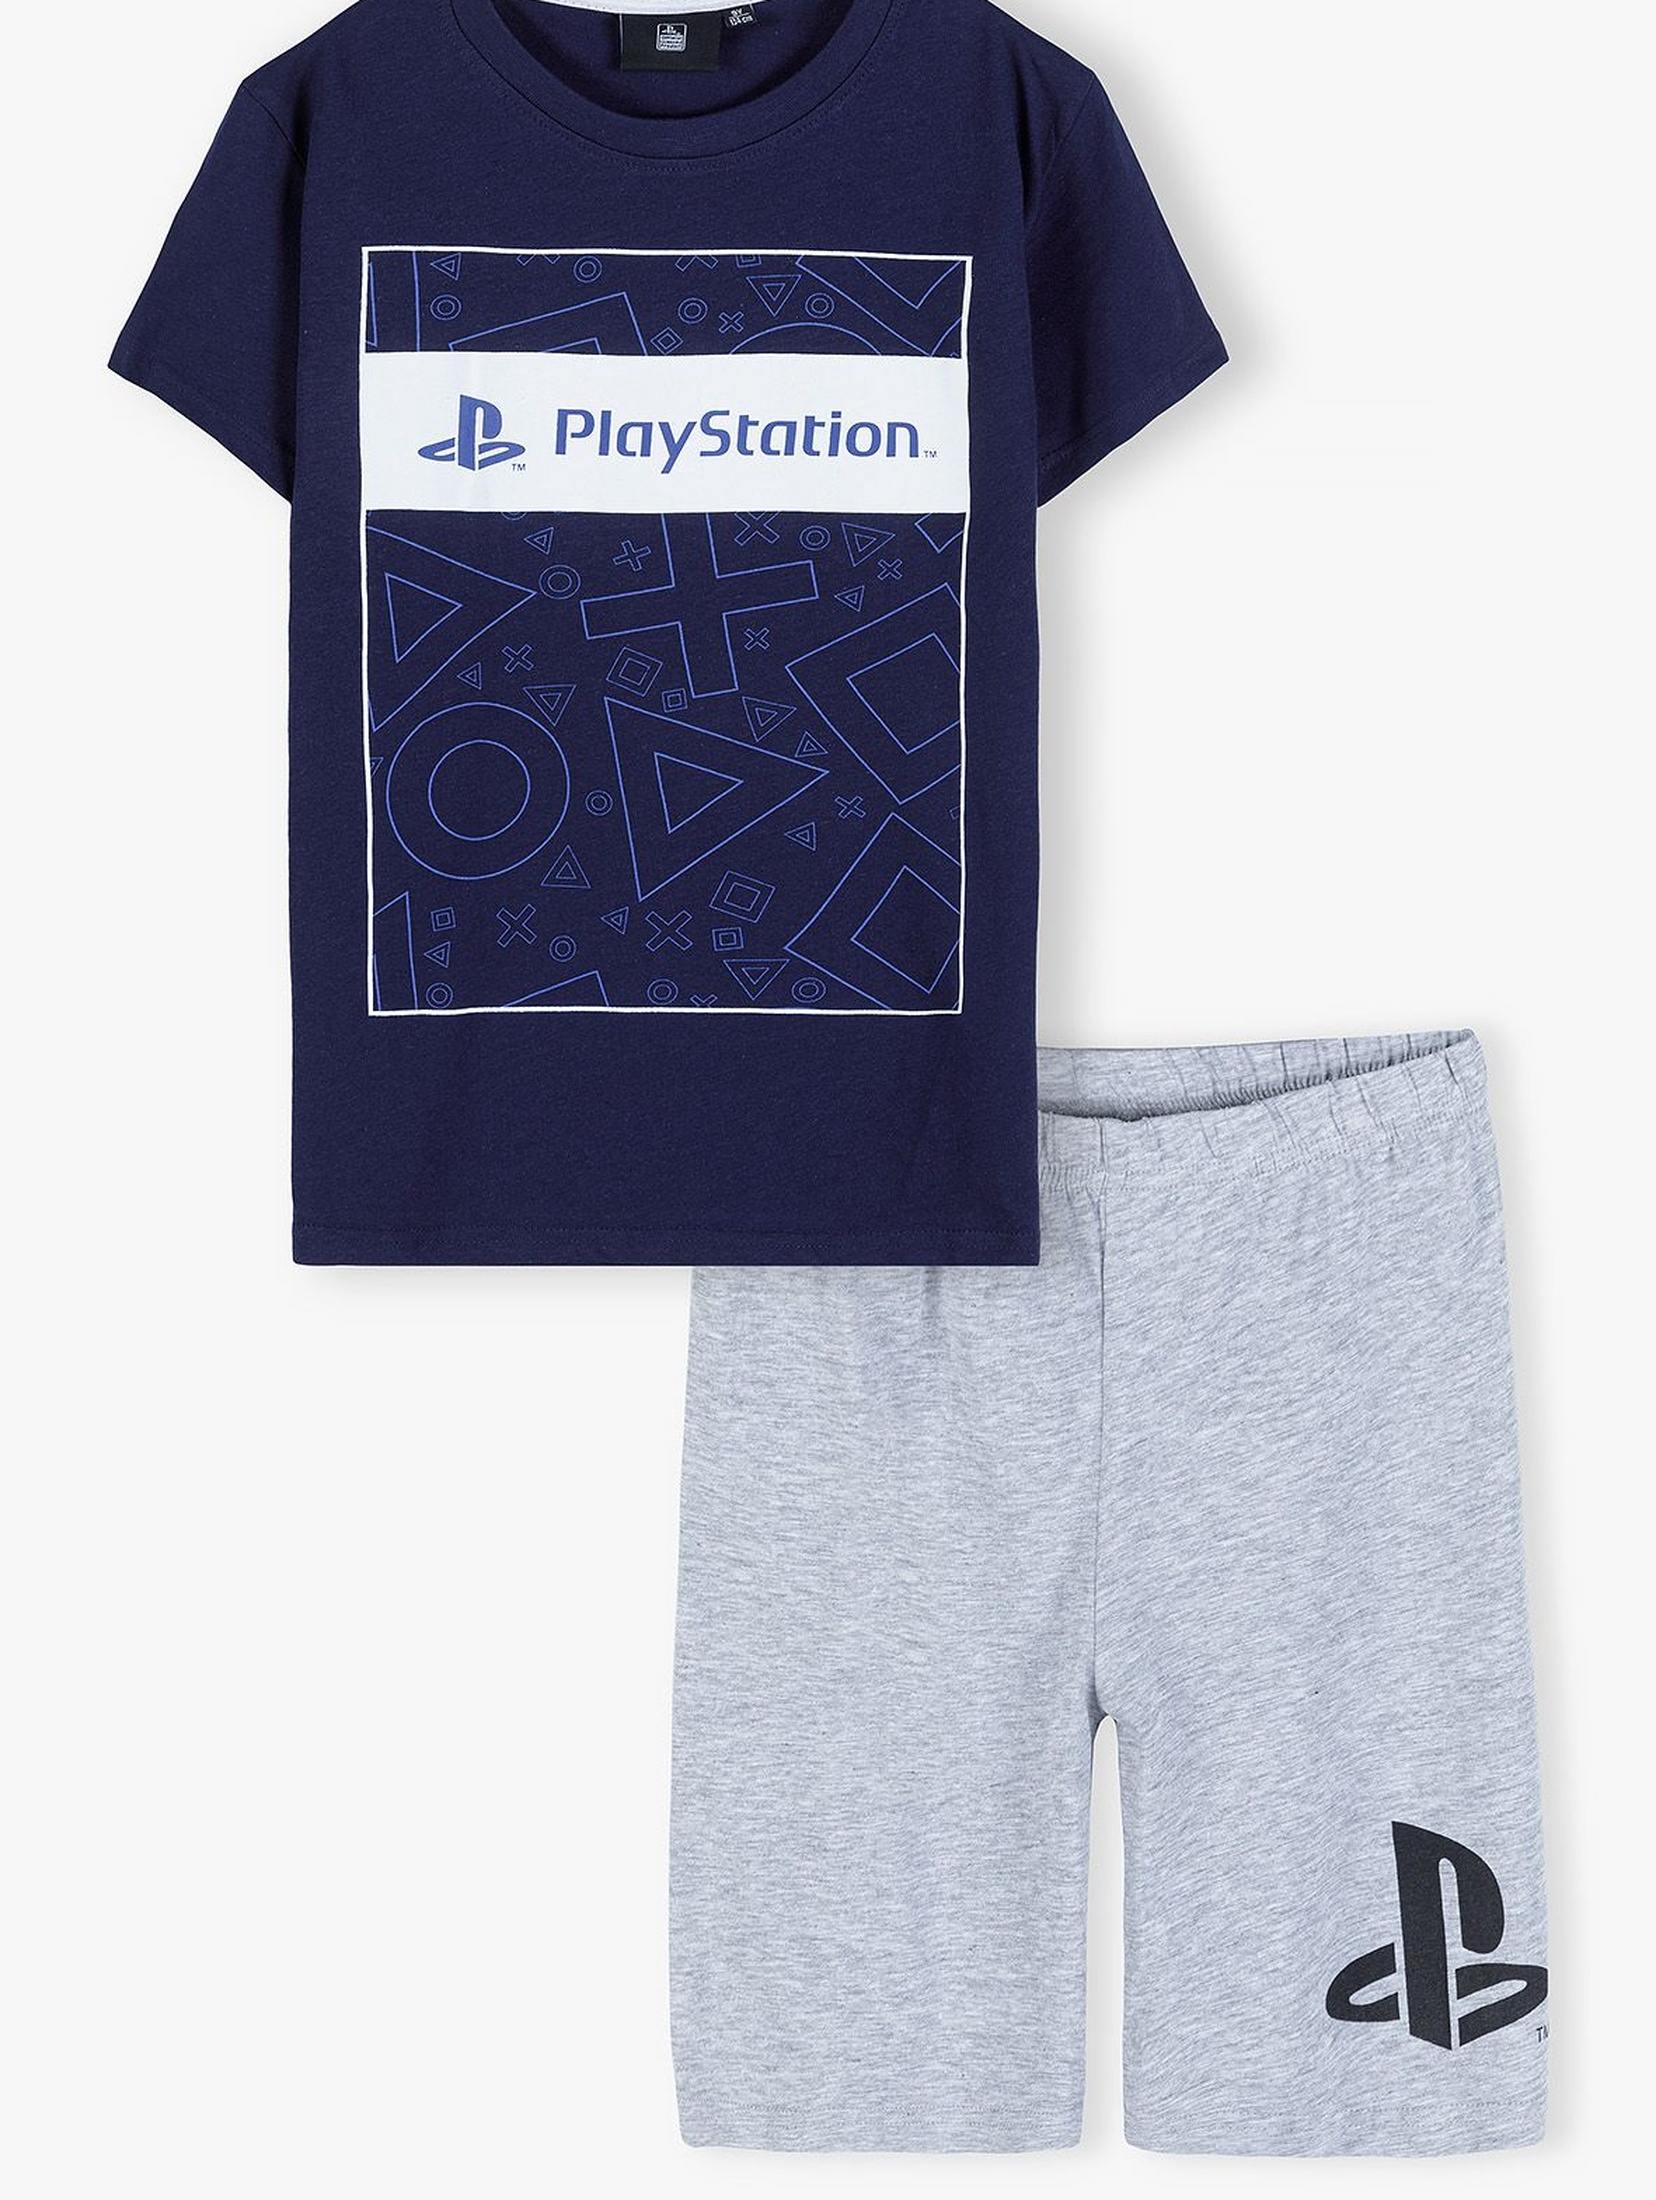 Bawełniana piżama dla chłopca - PlayStation